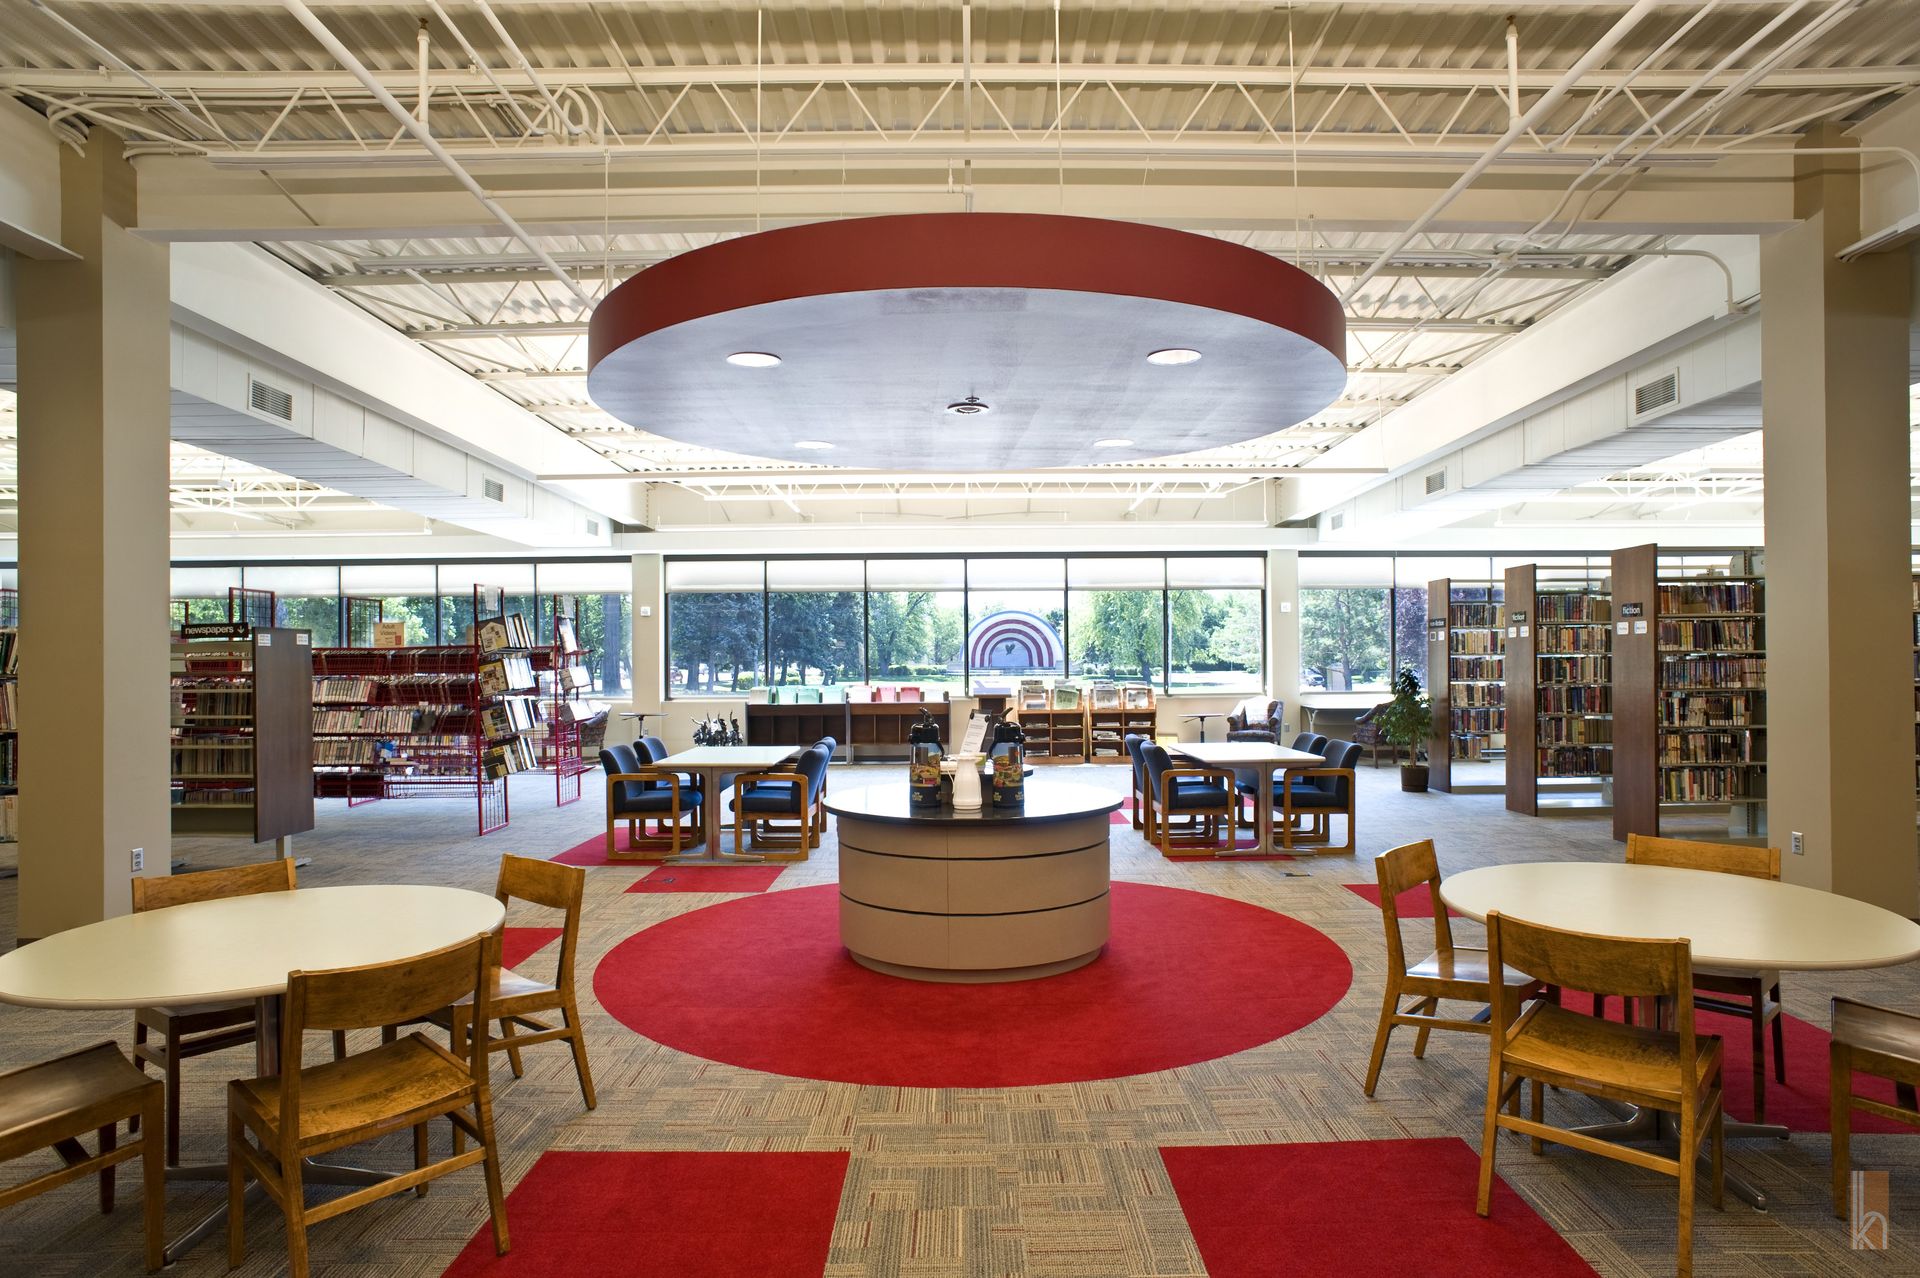 The public library's interior in Huron, South Dakota